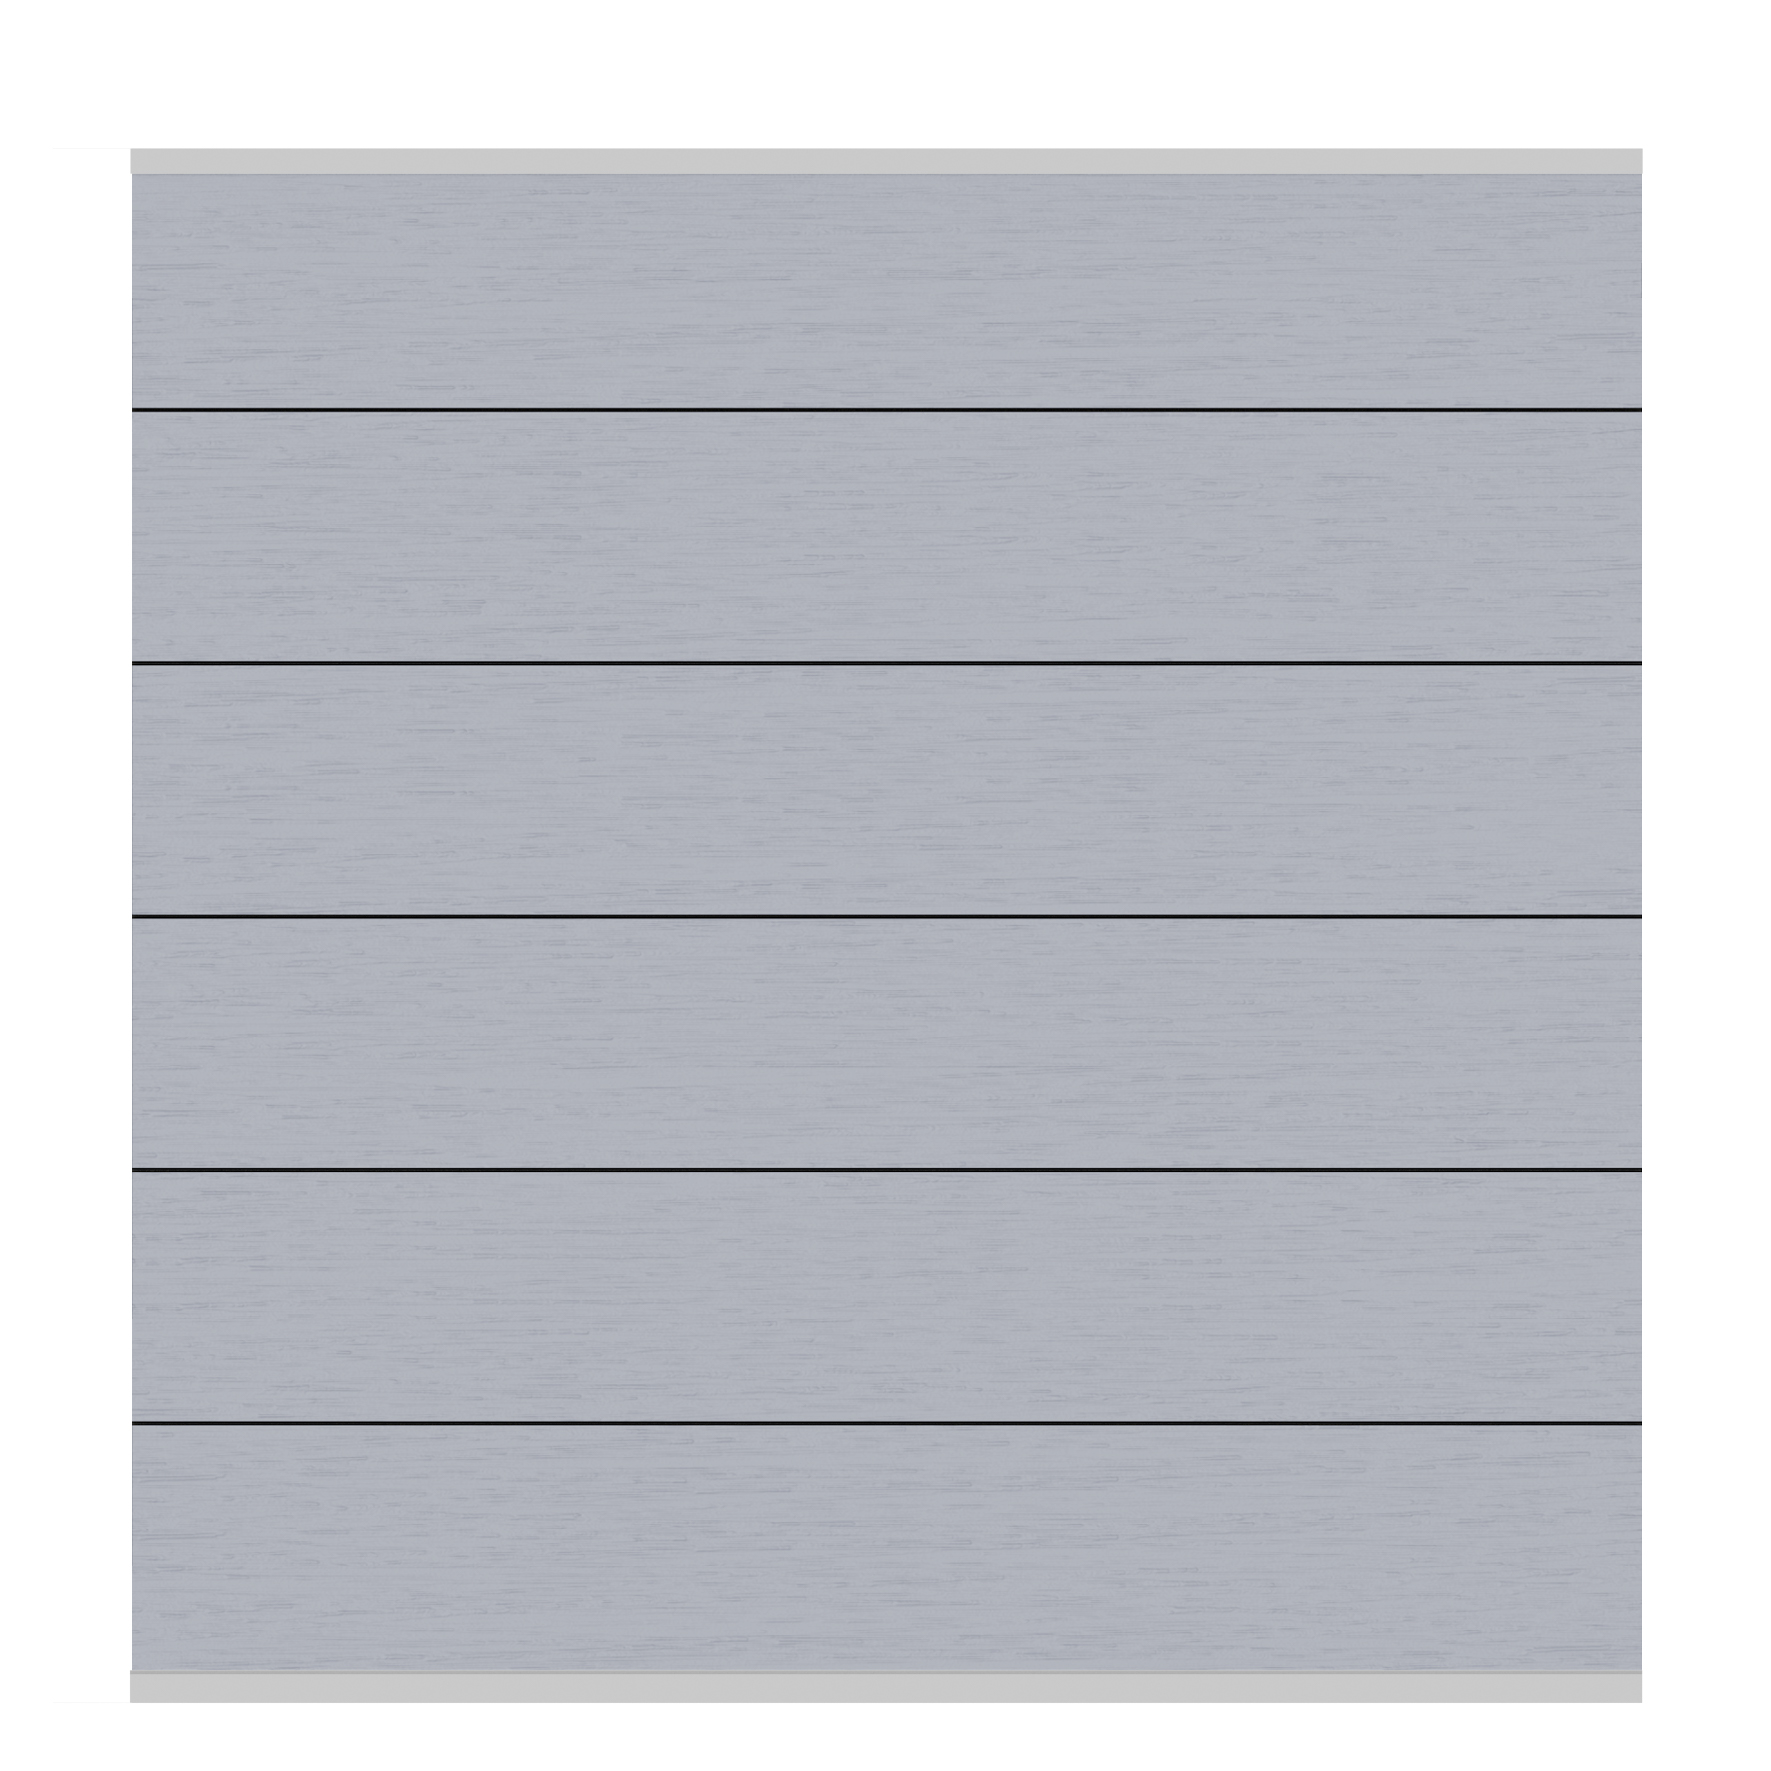 Systeem wpc xl scherm-set grijs zilver lijst - 178 x 184